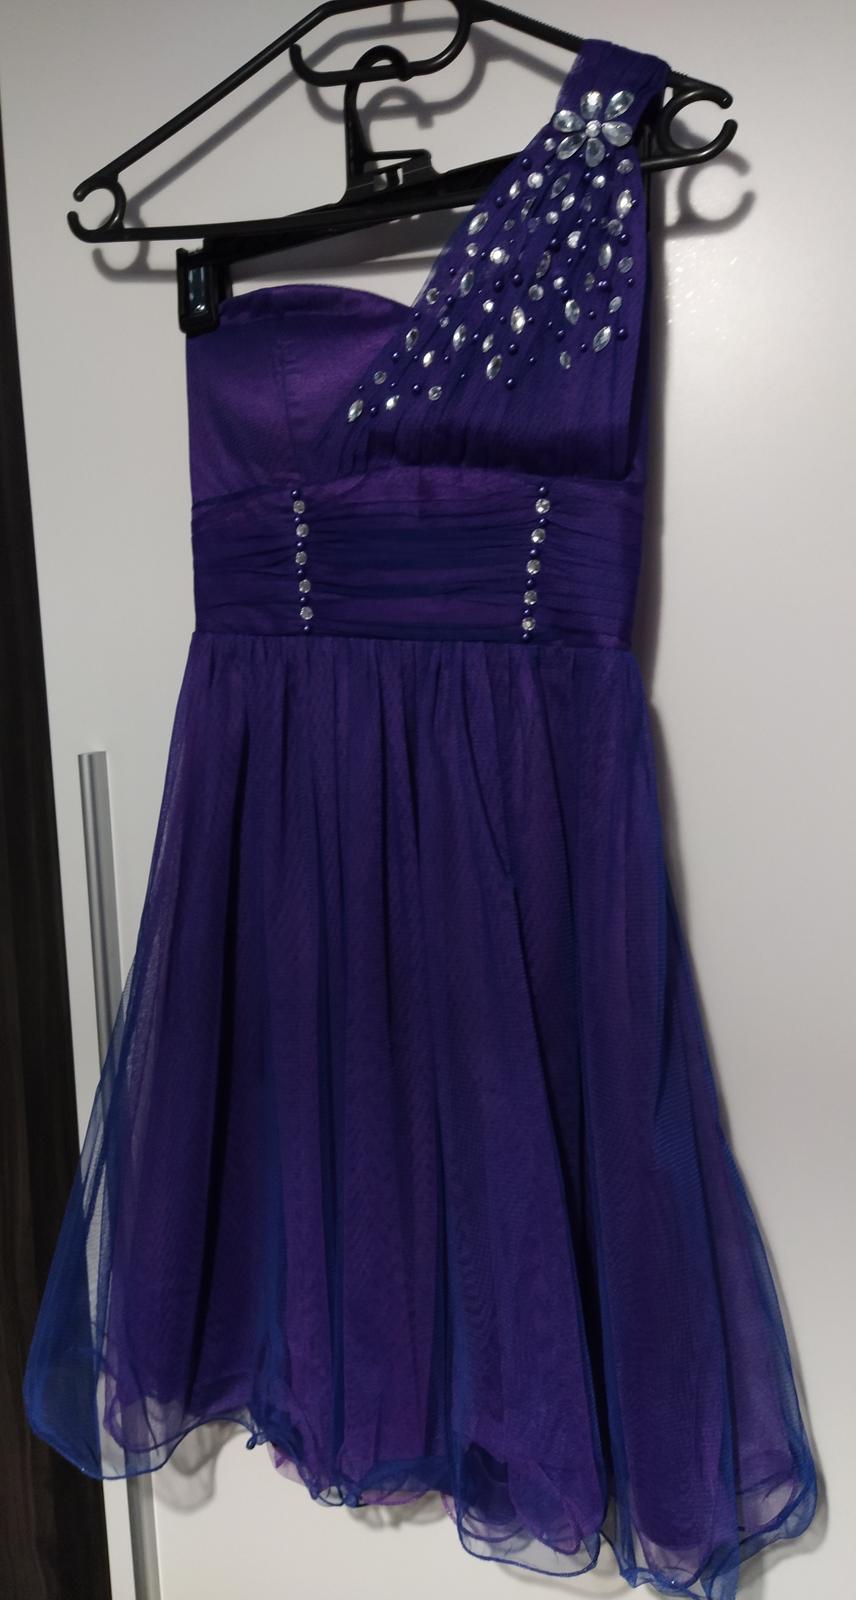 Fialovomodré společenské šaty - Obrázek č. 1